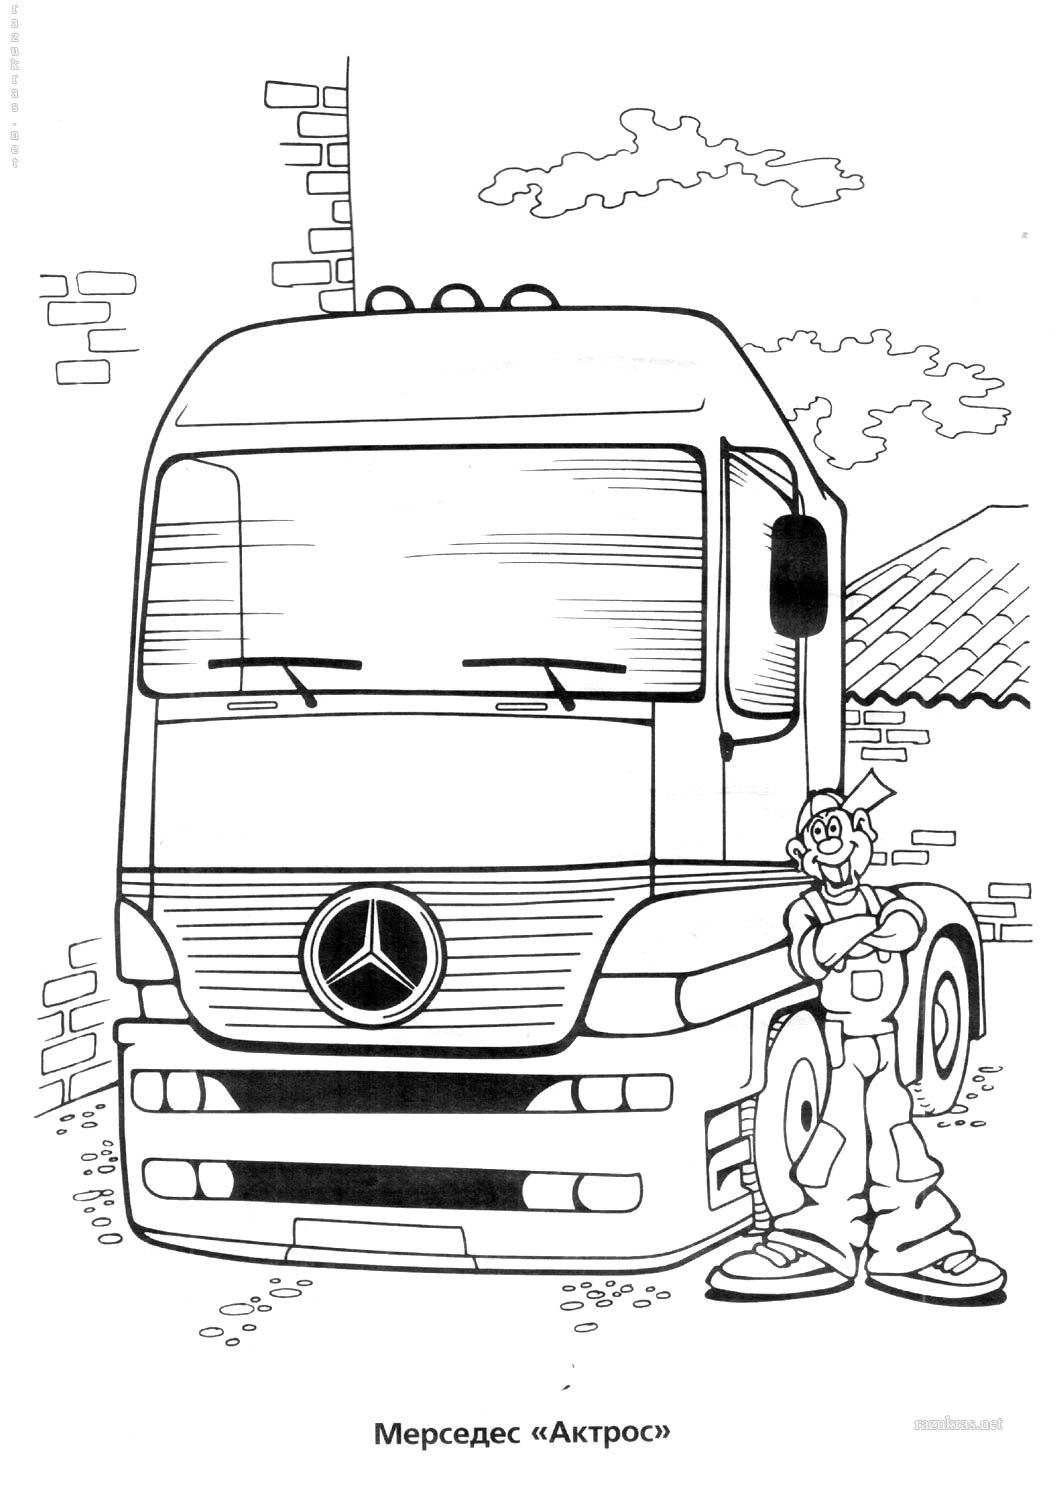 Как нарисовать грузовик Mercedes-Benz Actros — выполняем пошагово ручкой и маркером